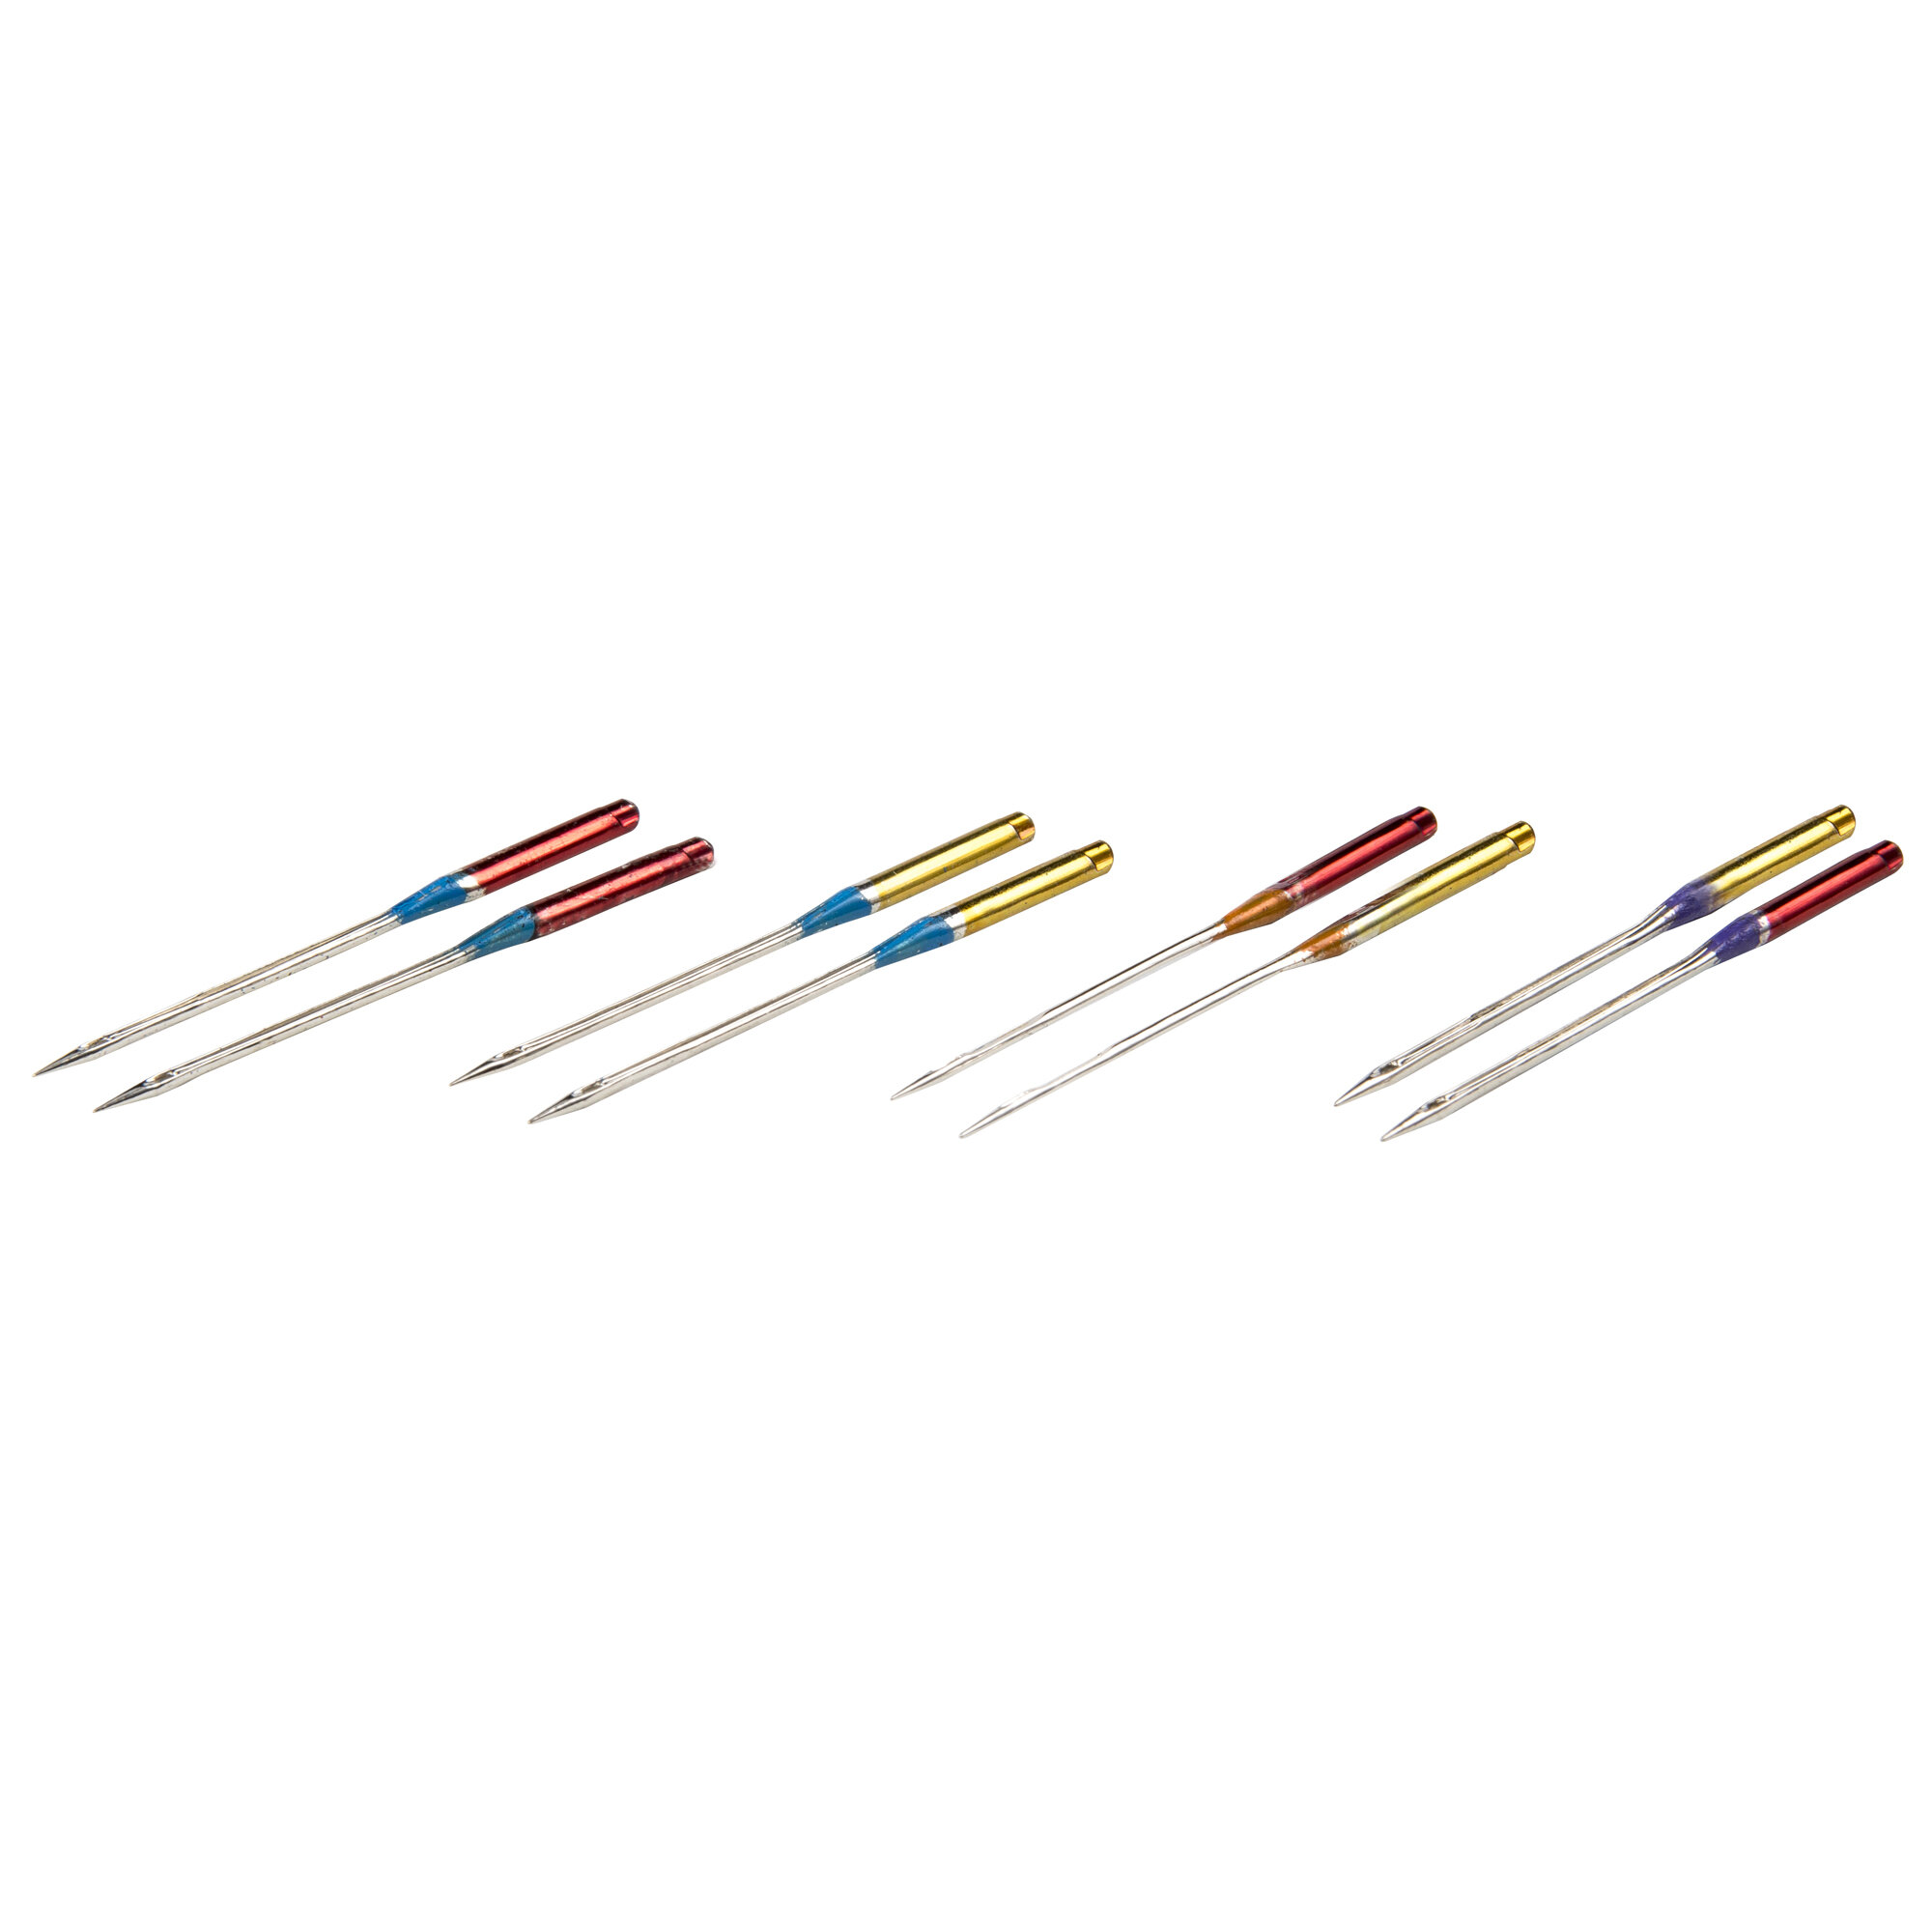 Singer Universal Denim Machine Needles Size 100/16 - Machine Needles - Pins  & Needles - Notions